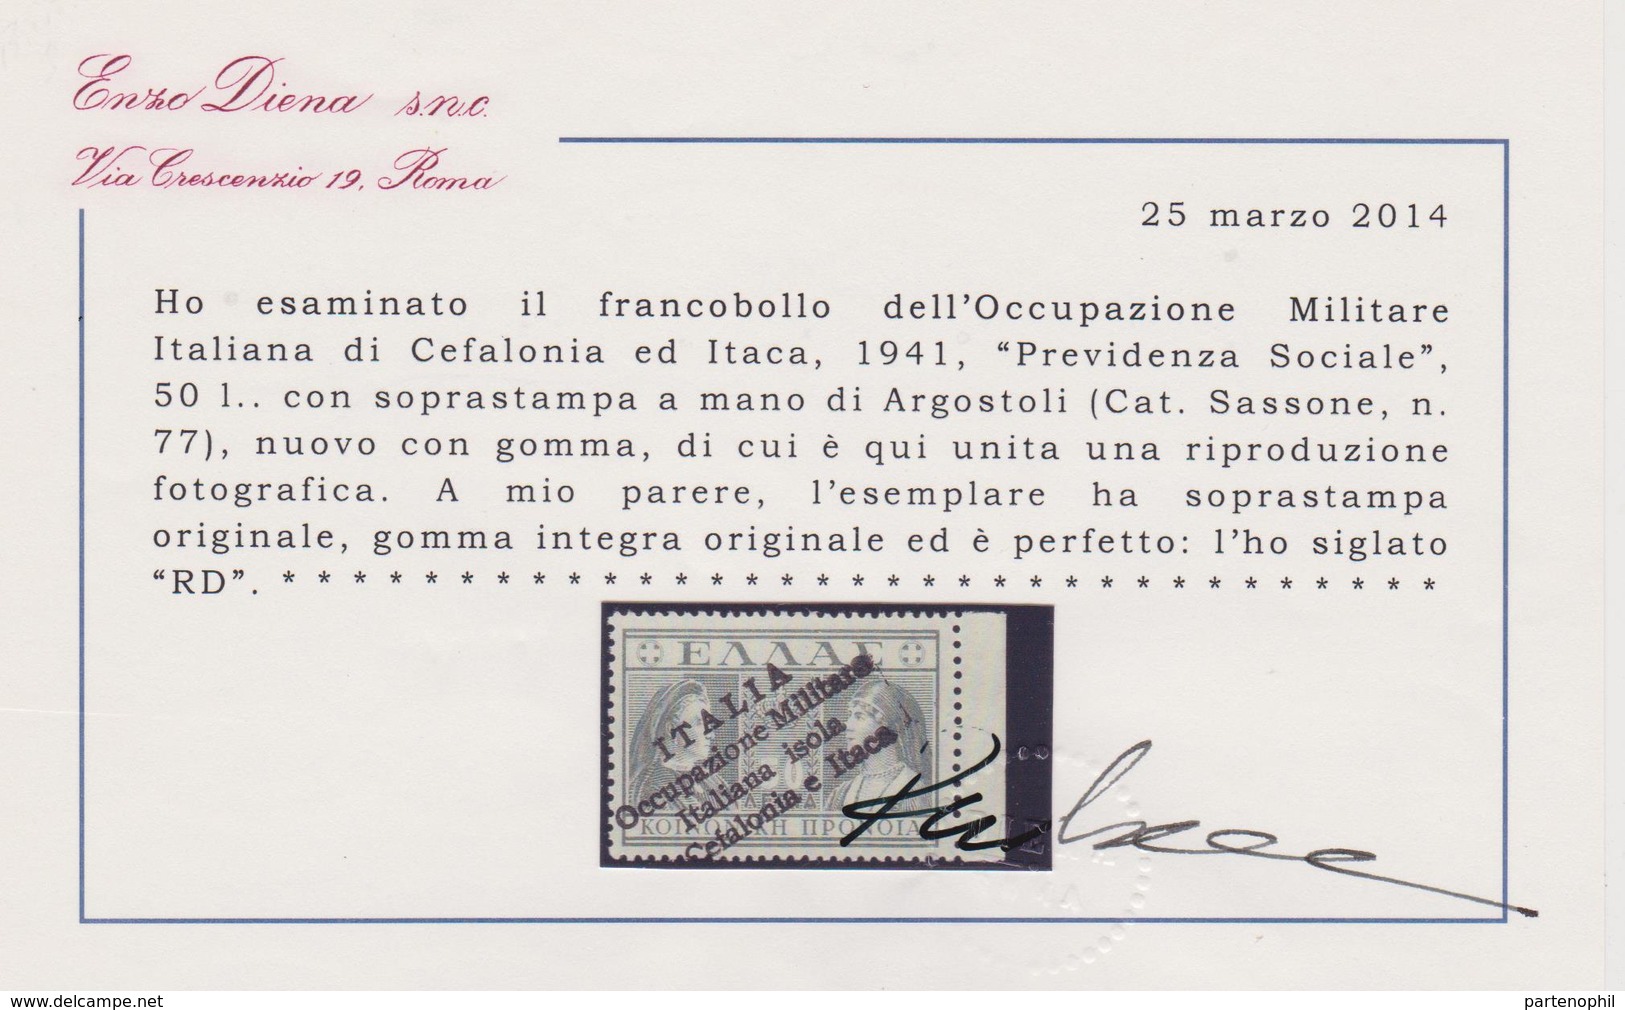 214 ** Cefalonia E Itaca 1941 – Occ. Militare Italiana “Previdenza Sociale” L.50 Con Soprastampa A Mano Di Argostoli N. - Cefalonia & Itaca